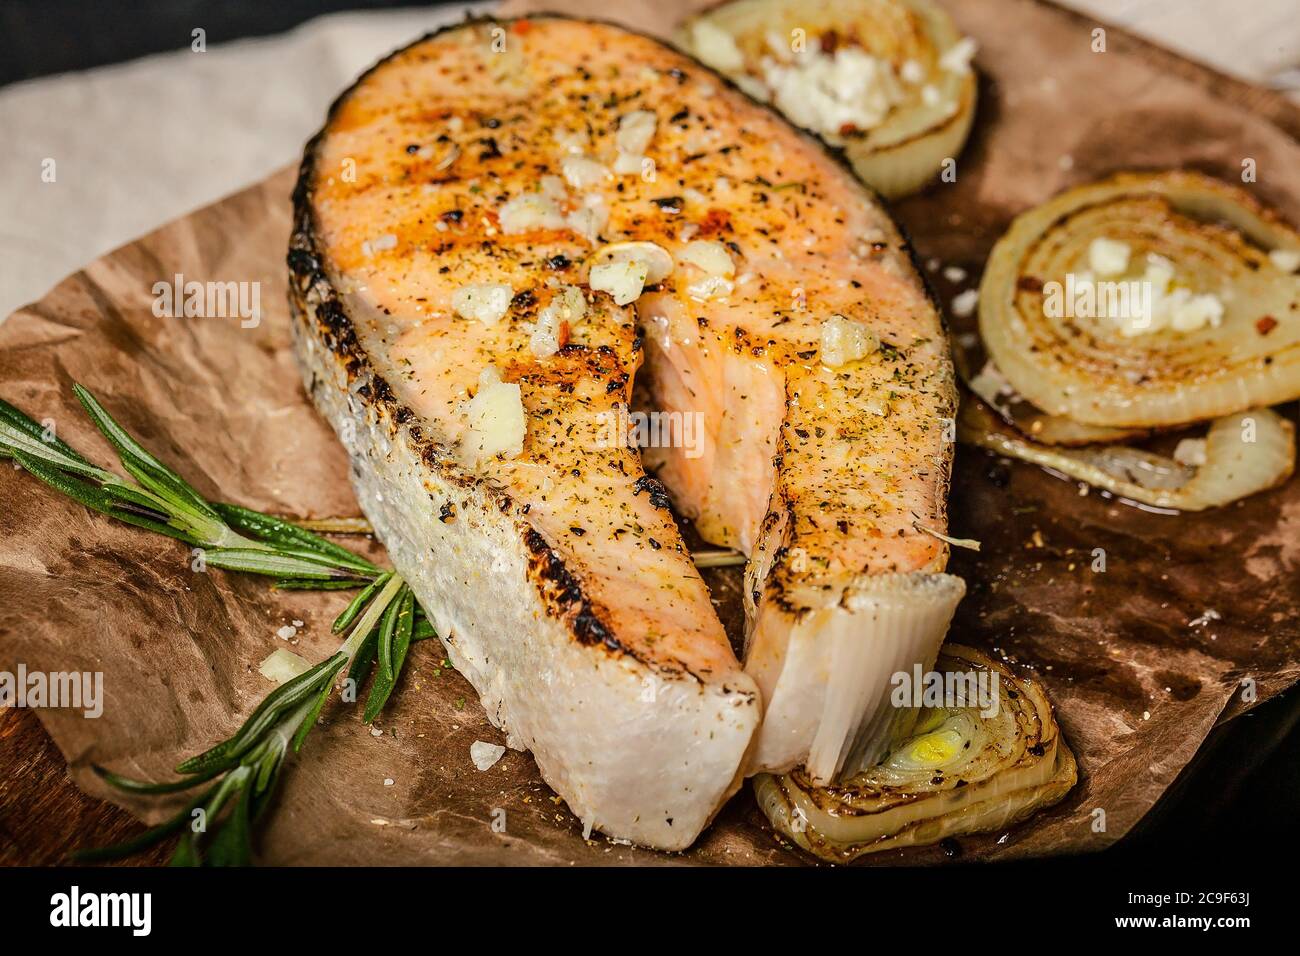 Steak de saumon grillé à l'ail, à l'oignon et aux herbes sur une planche à découper en bois. Gros plan Banque D'Images